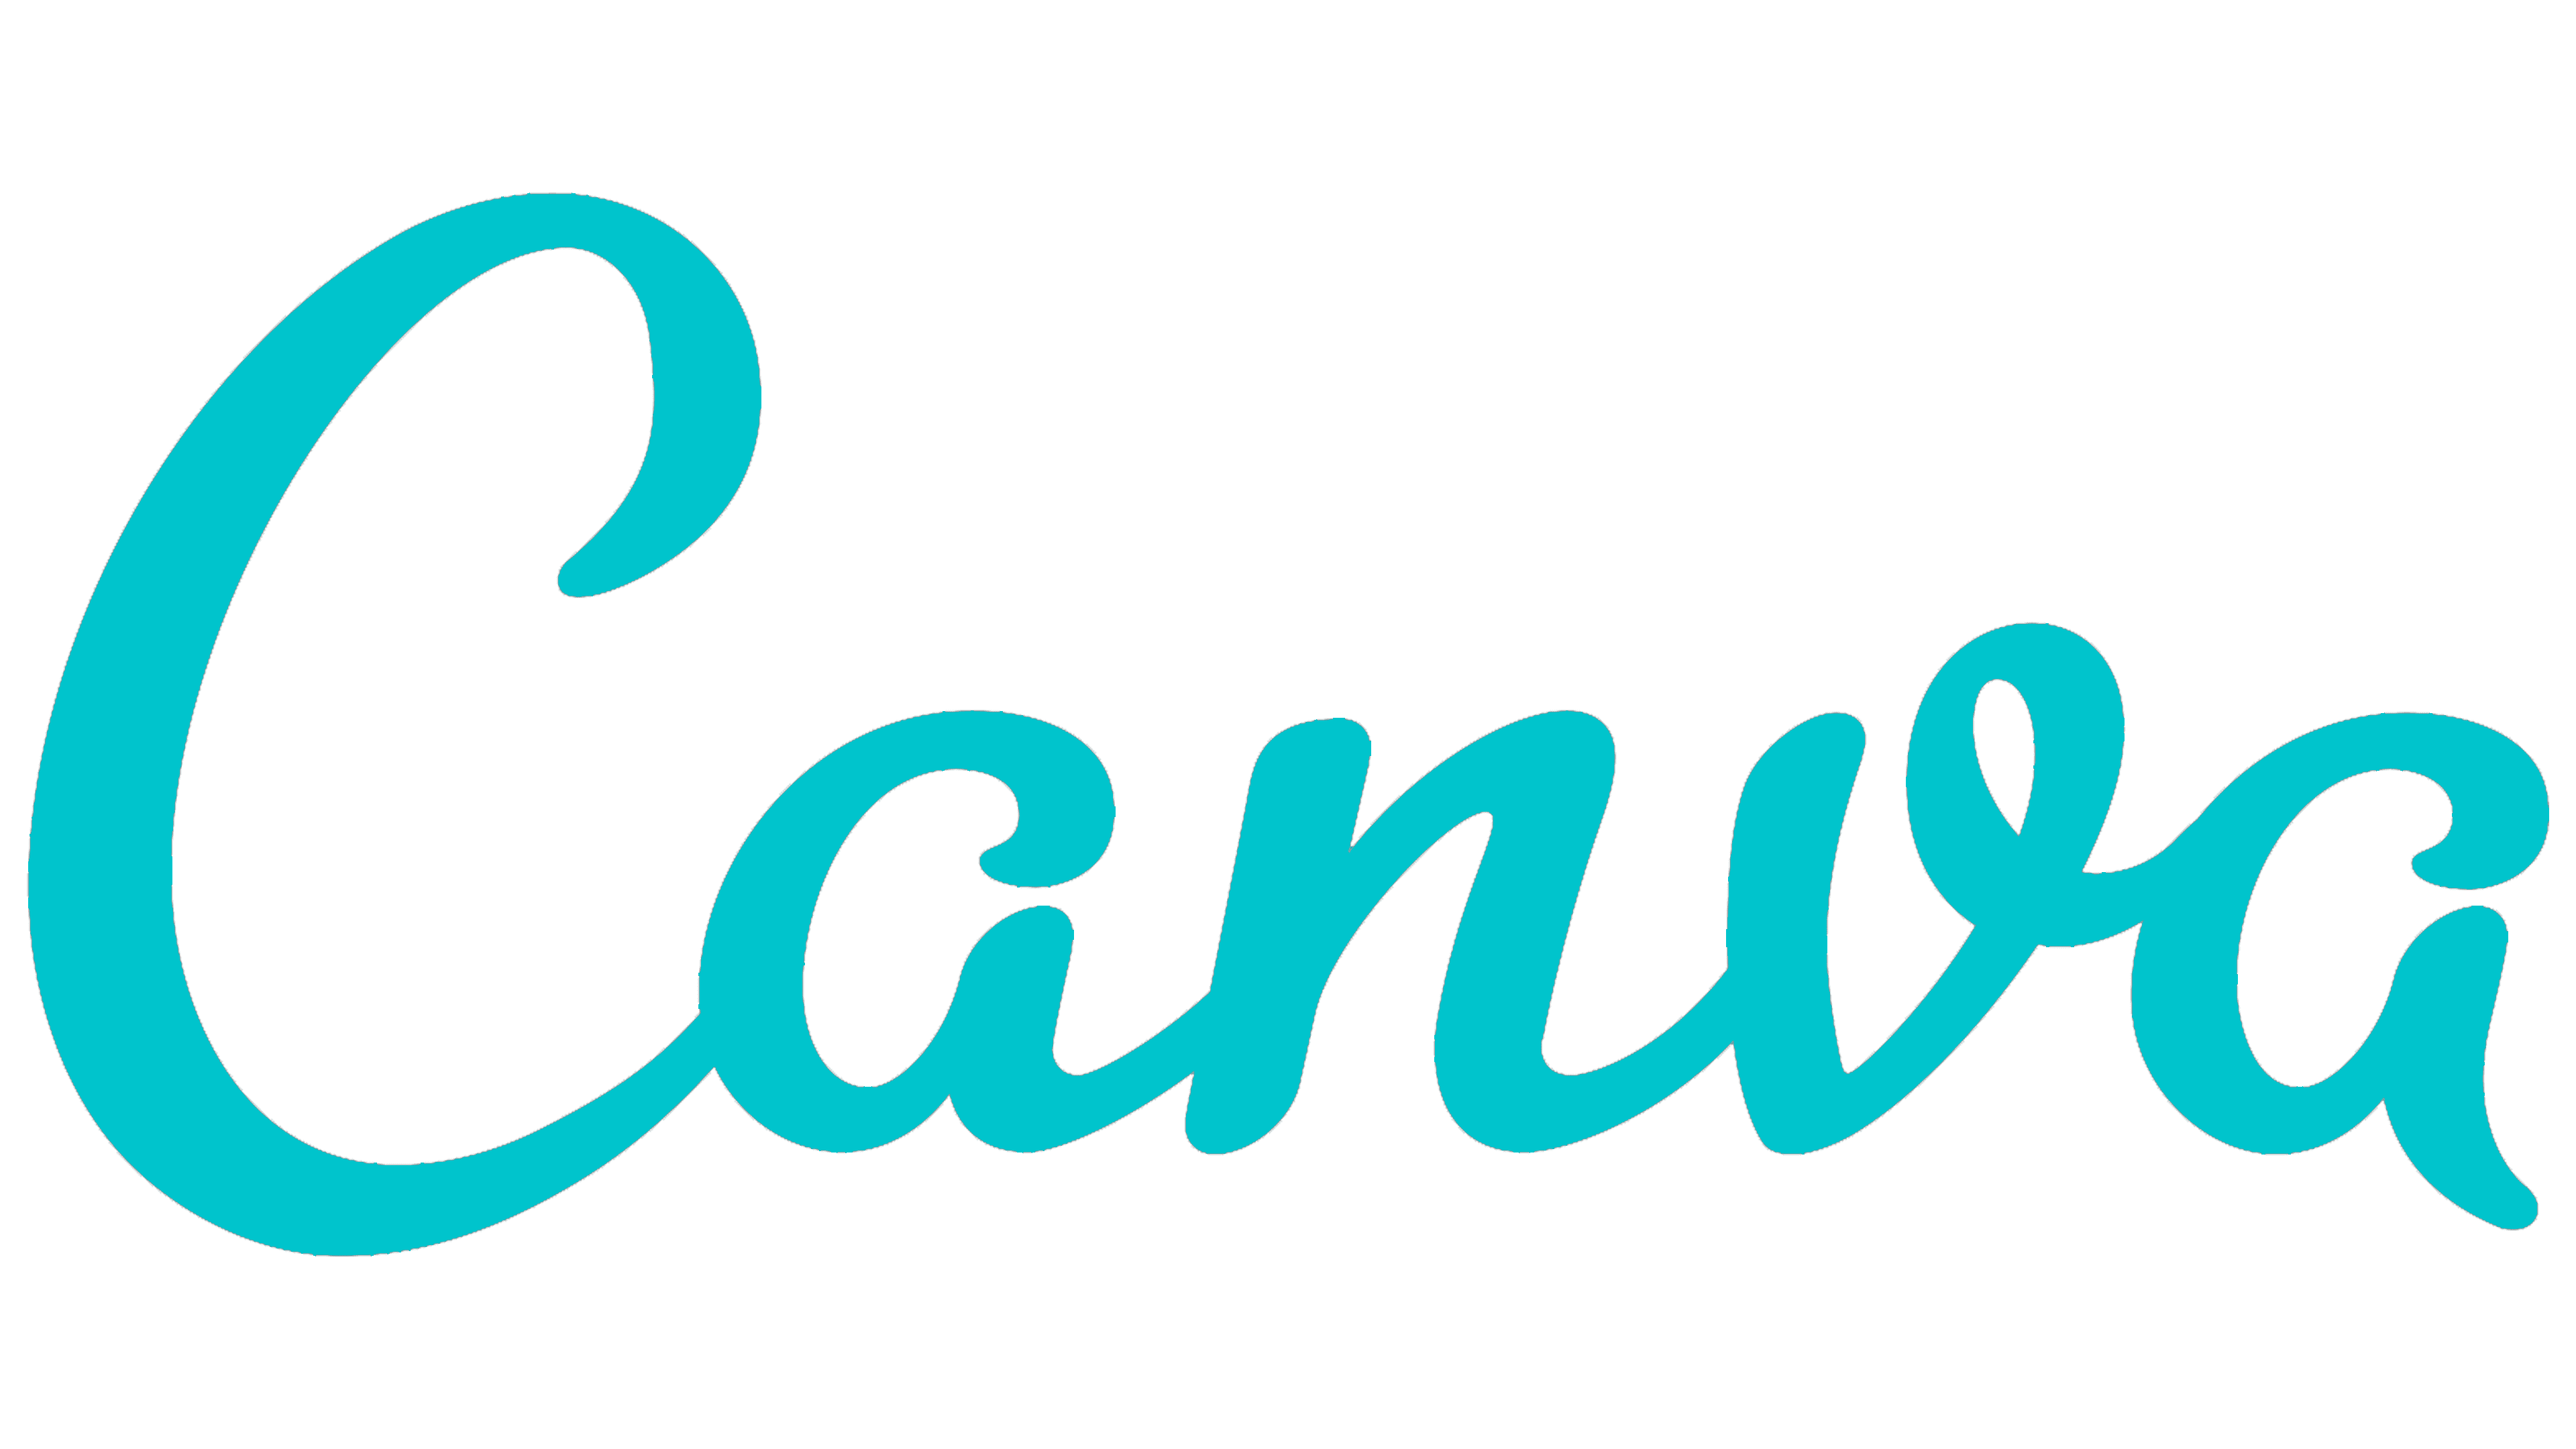 Logo Canva.png